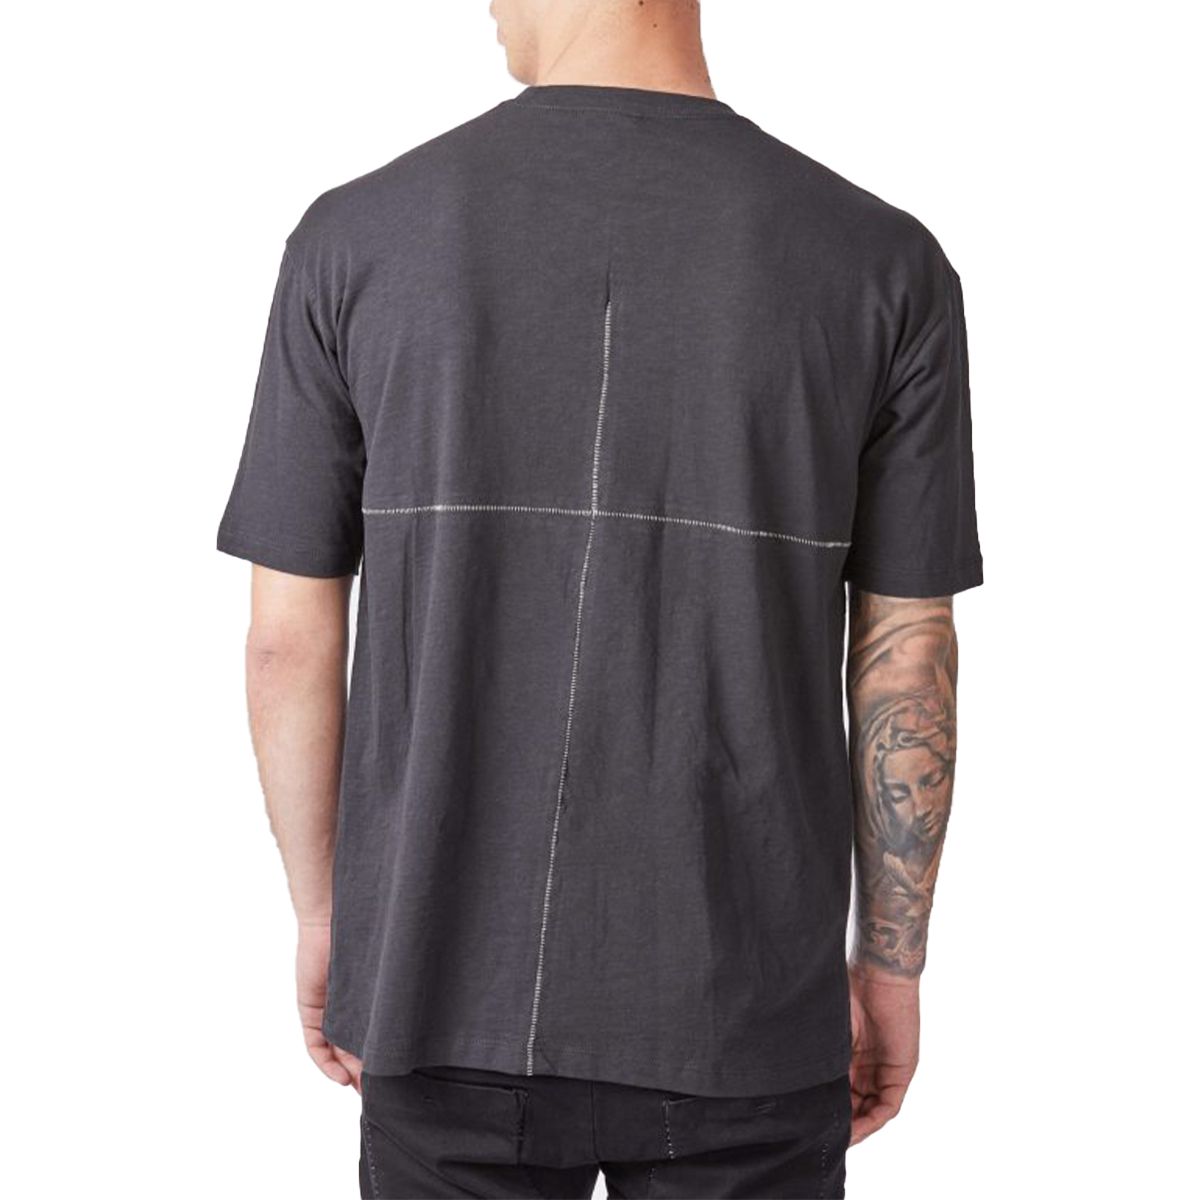 Cross Design T-Shirt